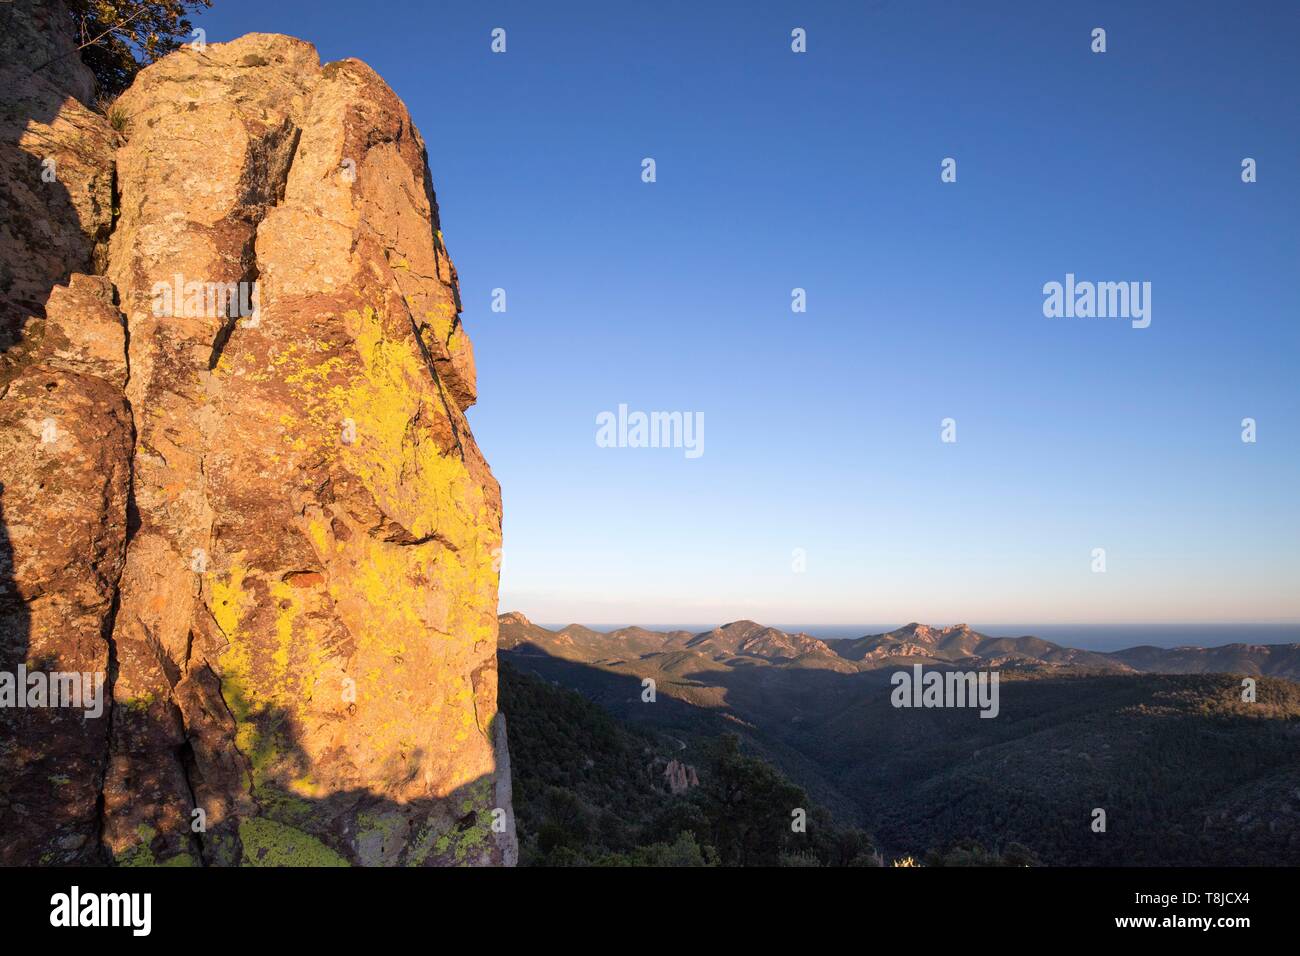 La France, Var, Fréjus, massif de l'Esterel, rouge de la rhyolite du rocher d'origine volcanique recouvert de lichen jaune, dans l'arrière-plan les sommets de la pointe du Cap Roux Banque D'Images